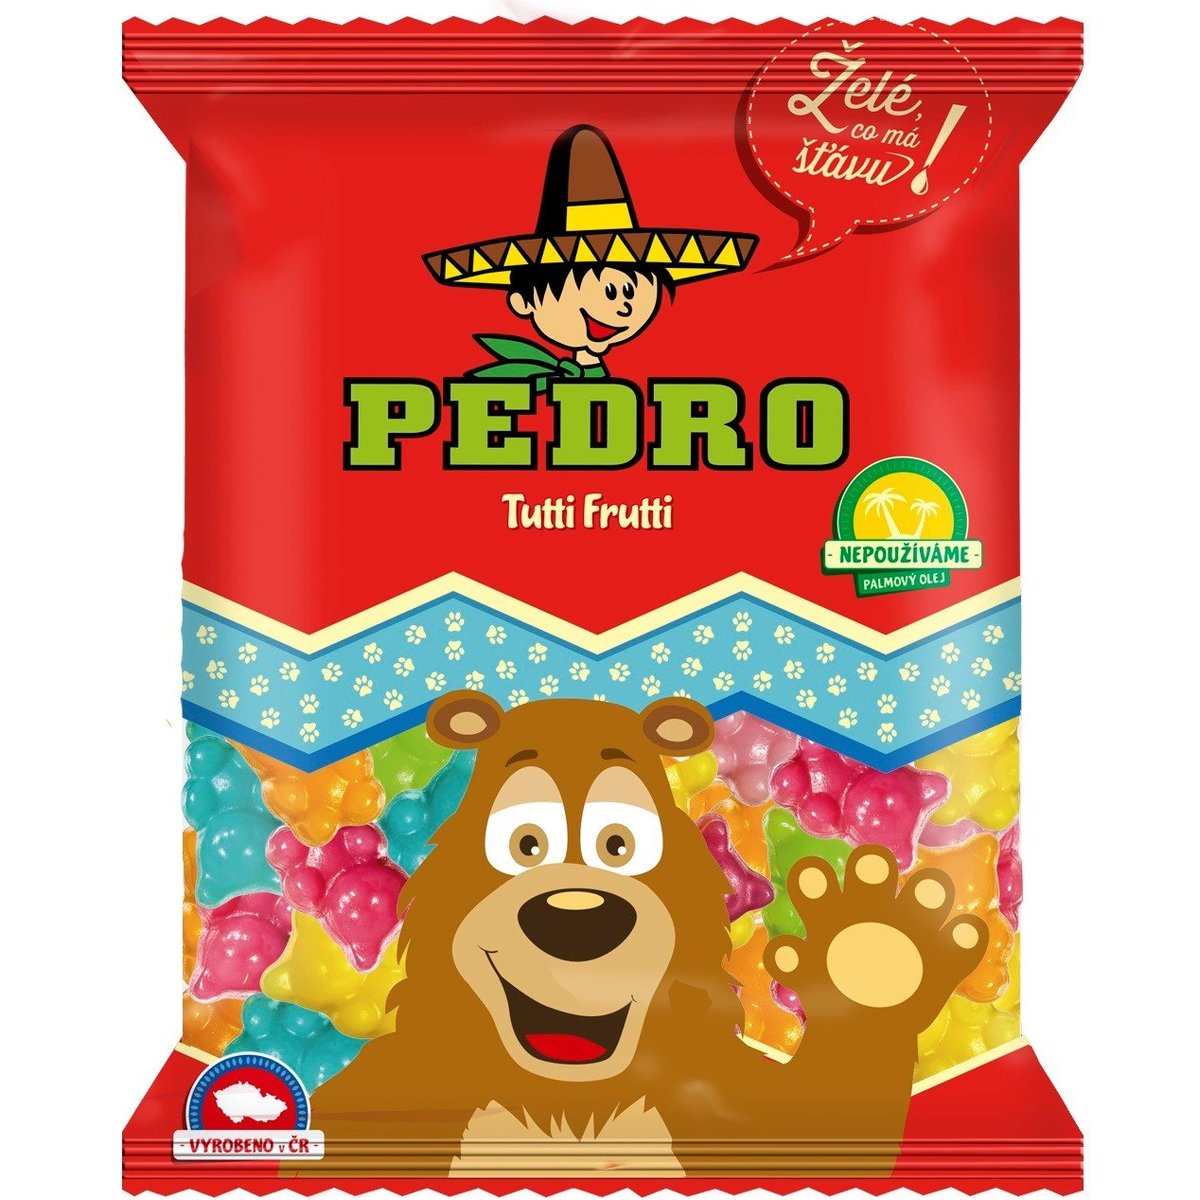 Pedro Tutti Frutti